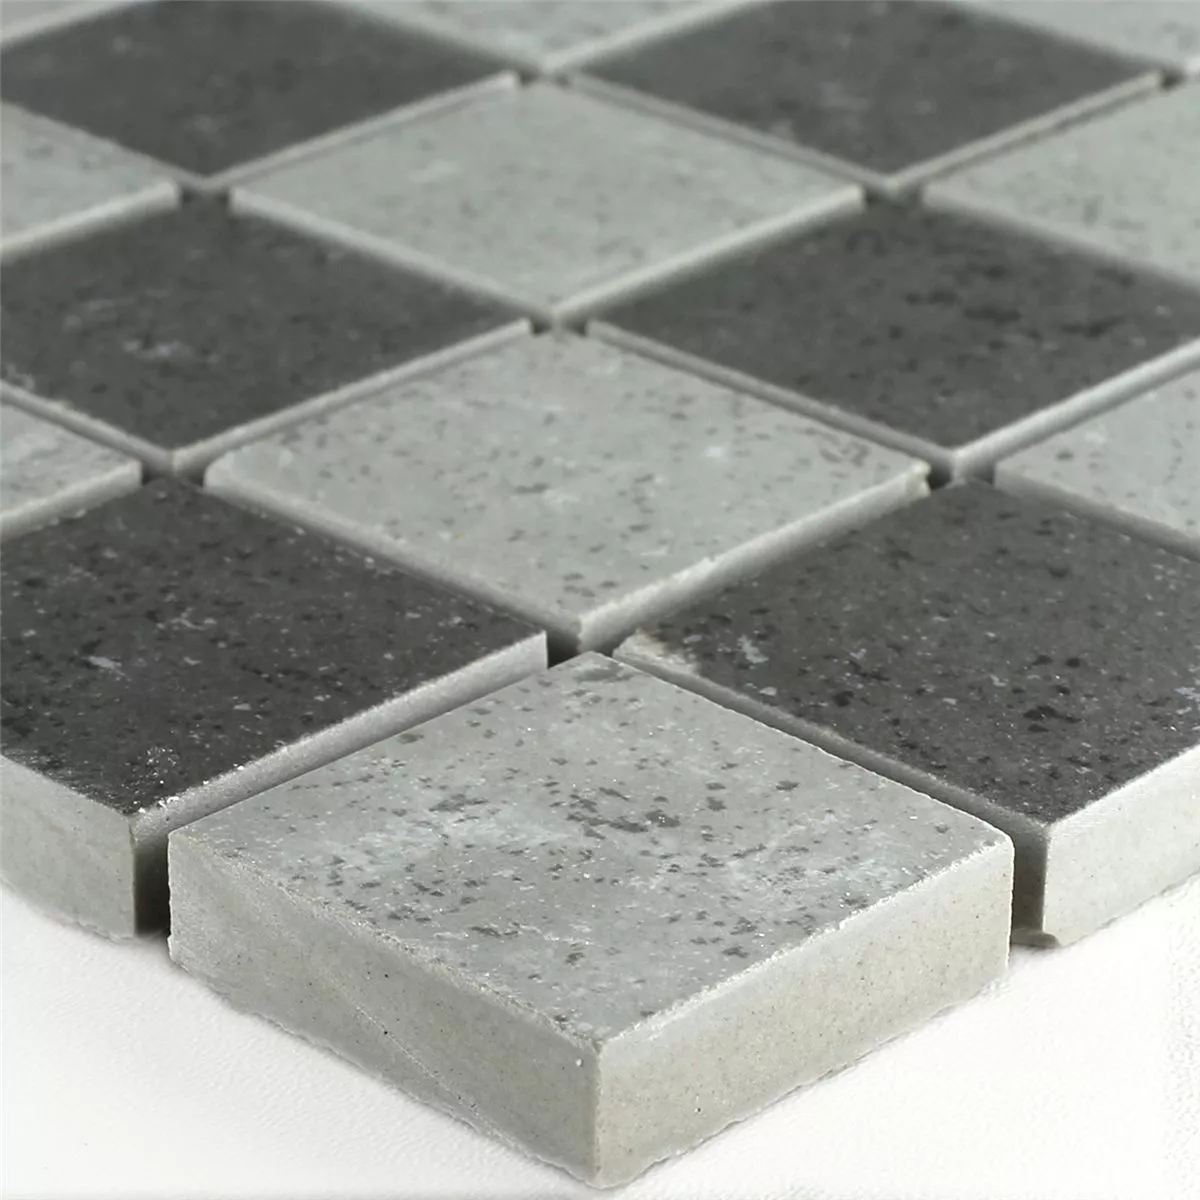 Mosaic Tiles Chess Board Grey Mat